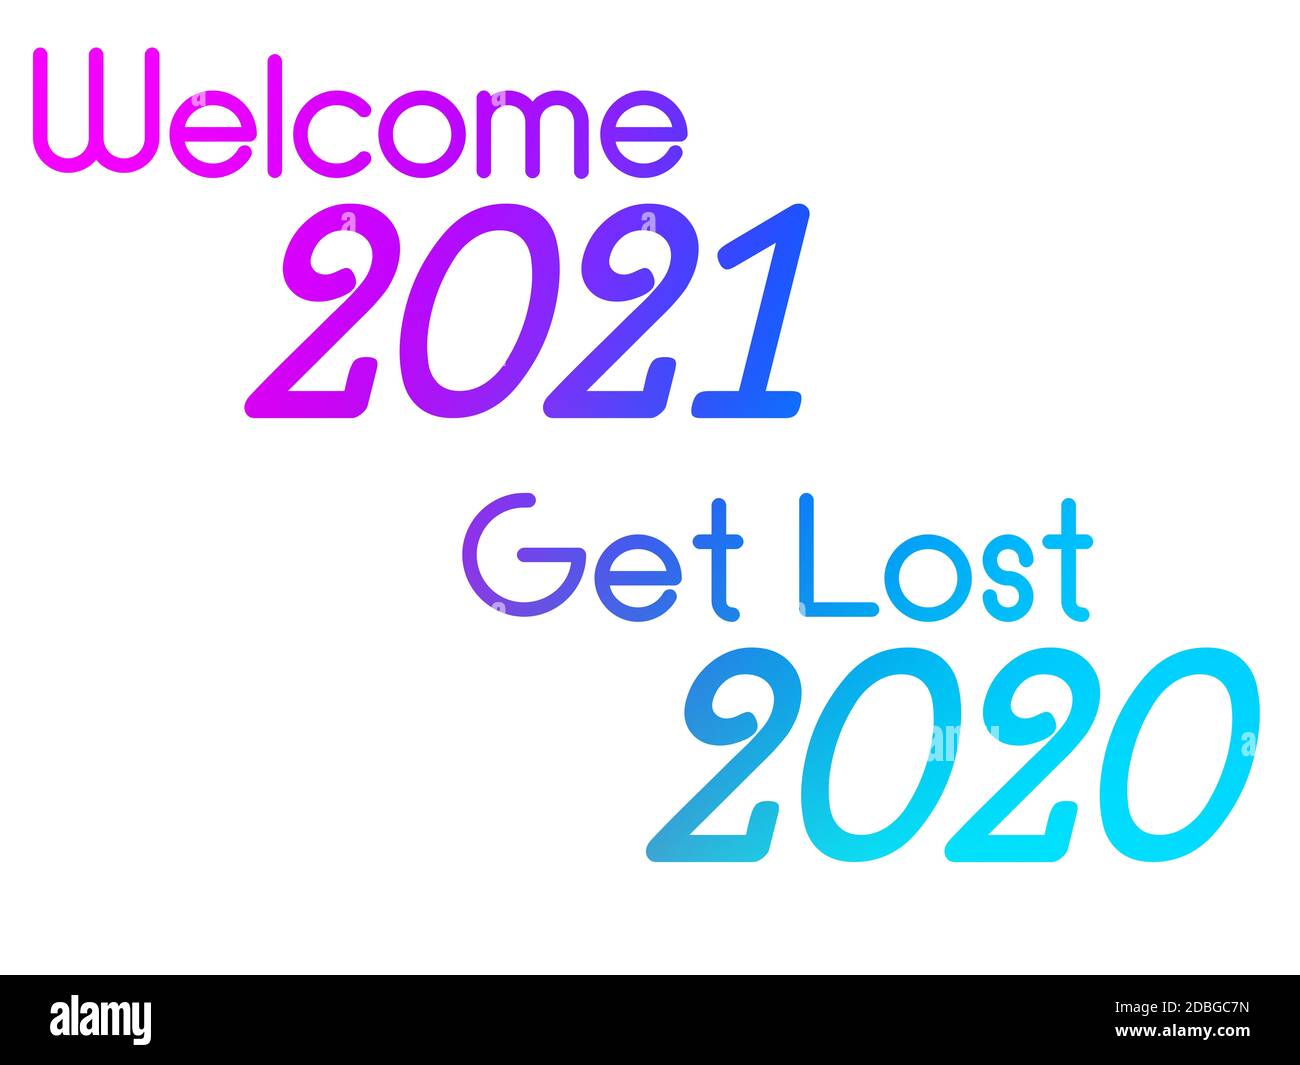 Un'illustrazione colorata di un felice anno nuovo con Phase Welcome 2021 Get Lost 2020. Foto Stock